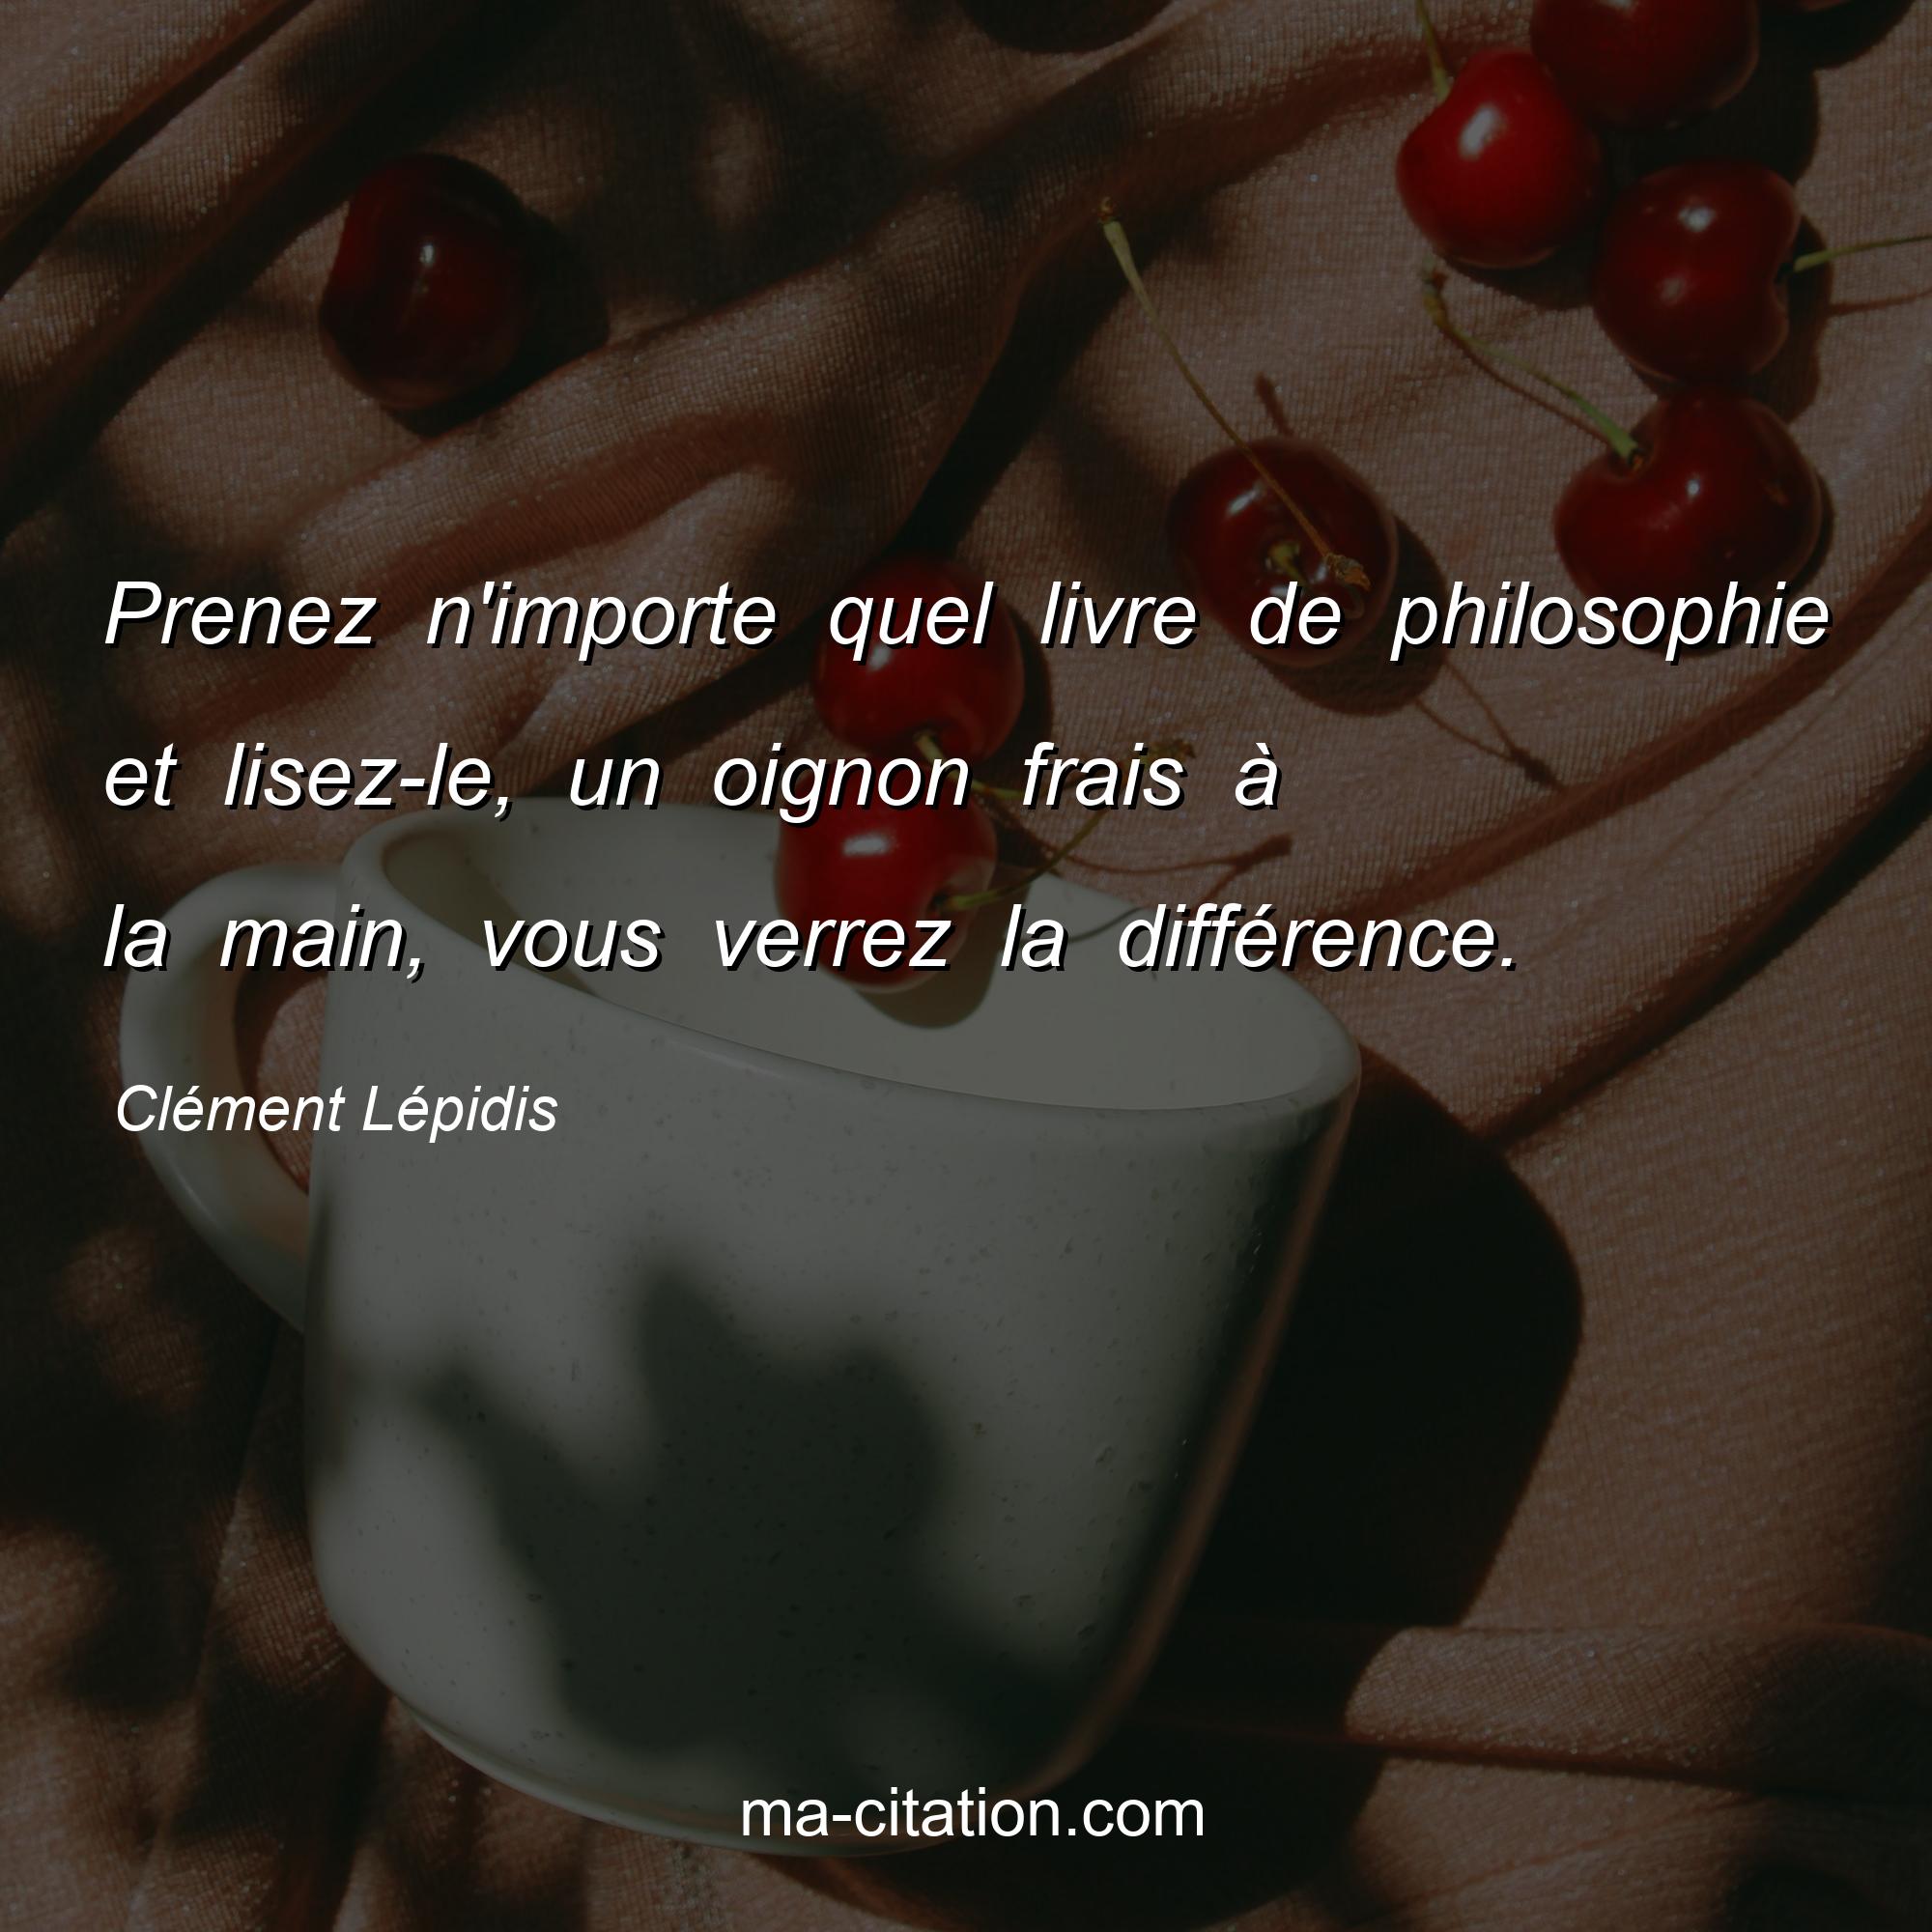 Clément Lépidis : Prenez n'importe quel livre de philosophie et lisez-le, un oignon frais à la main, vous verrez la différence.